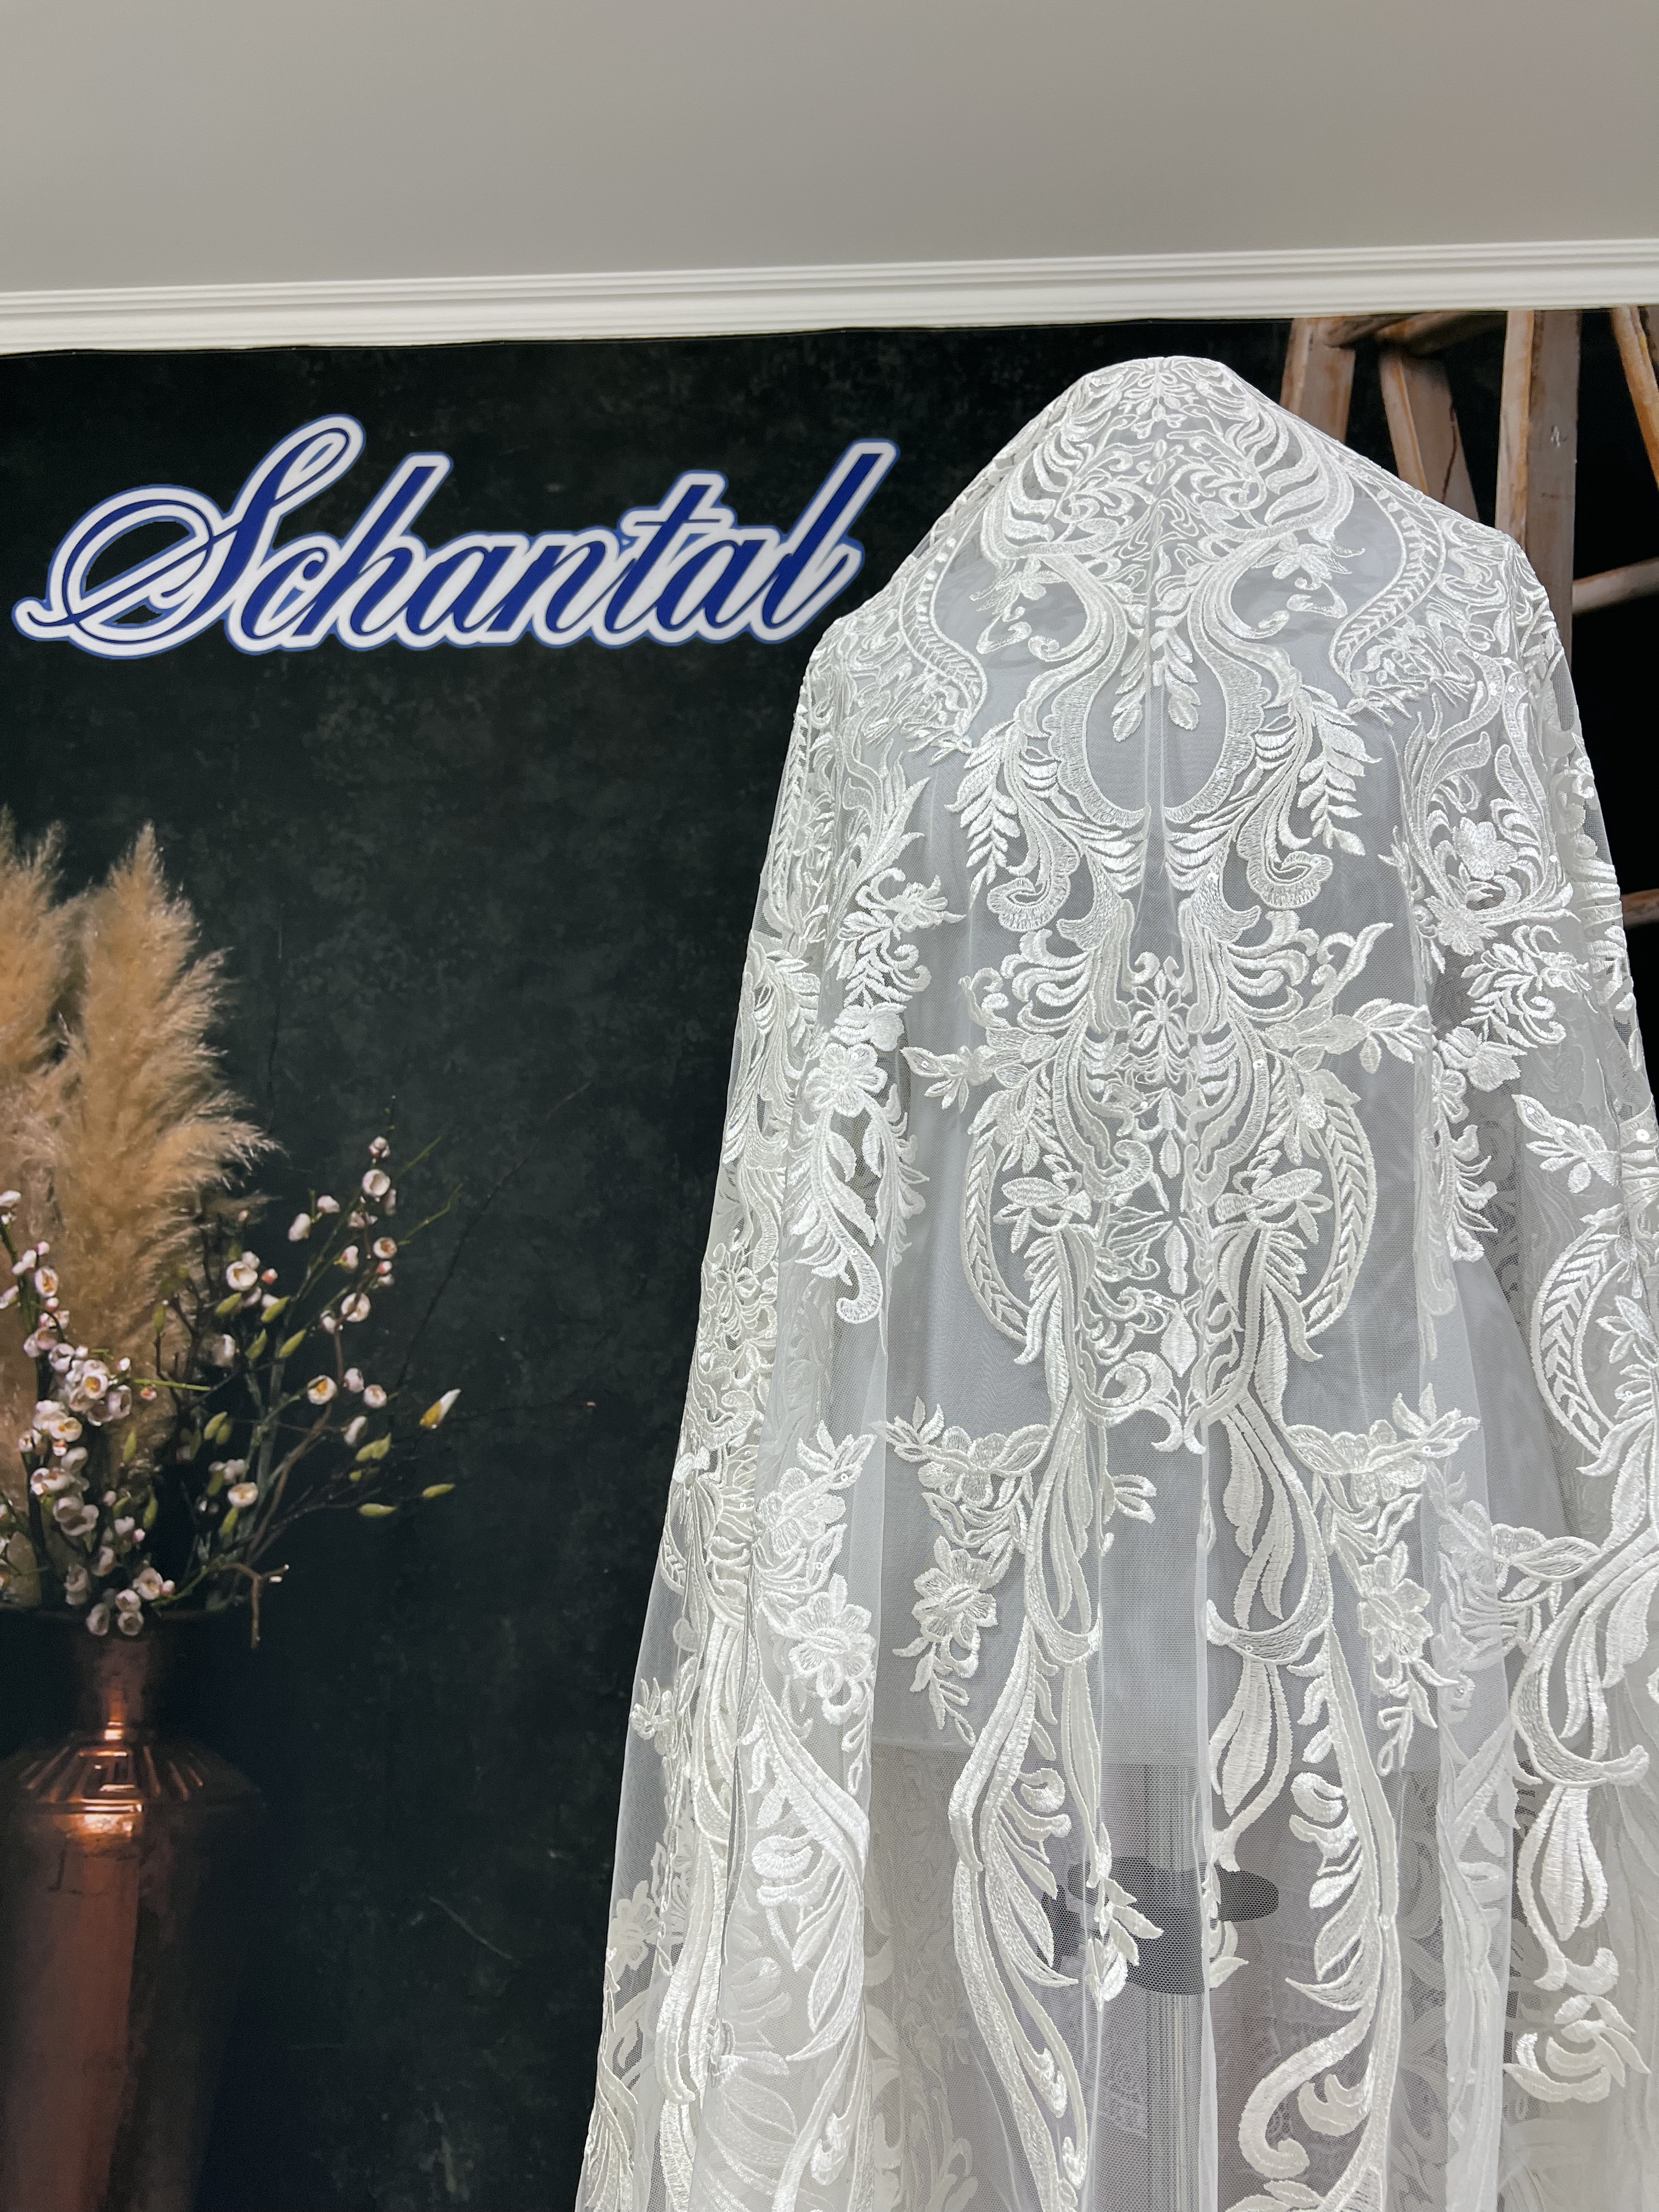 Schantal Brautkleid aus der Kollektion „Schatz“, Modell K - 1 iv. Foto 6